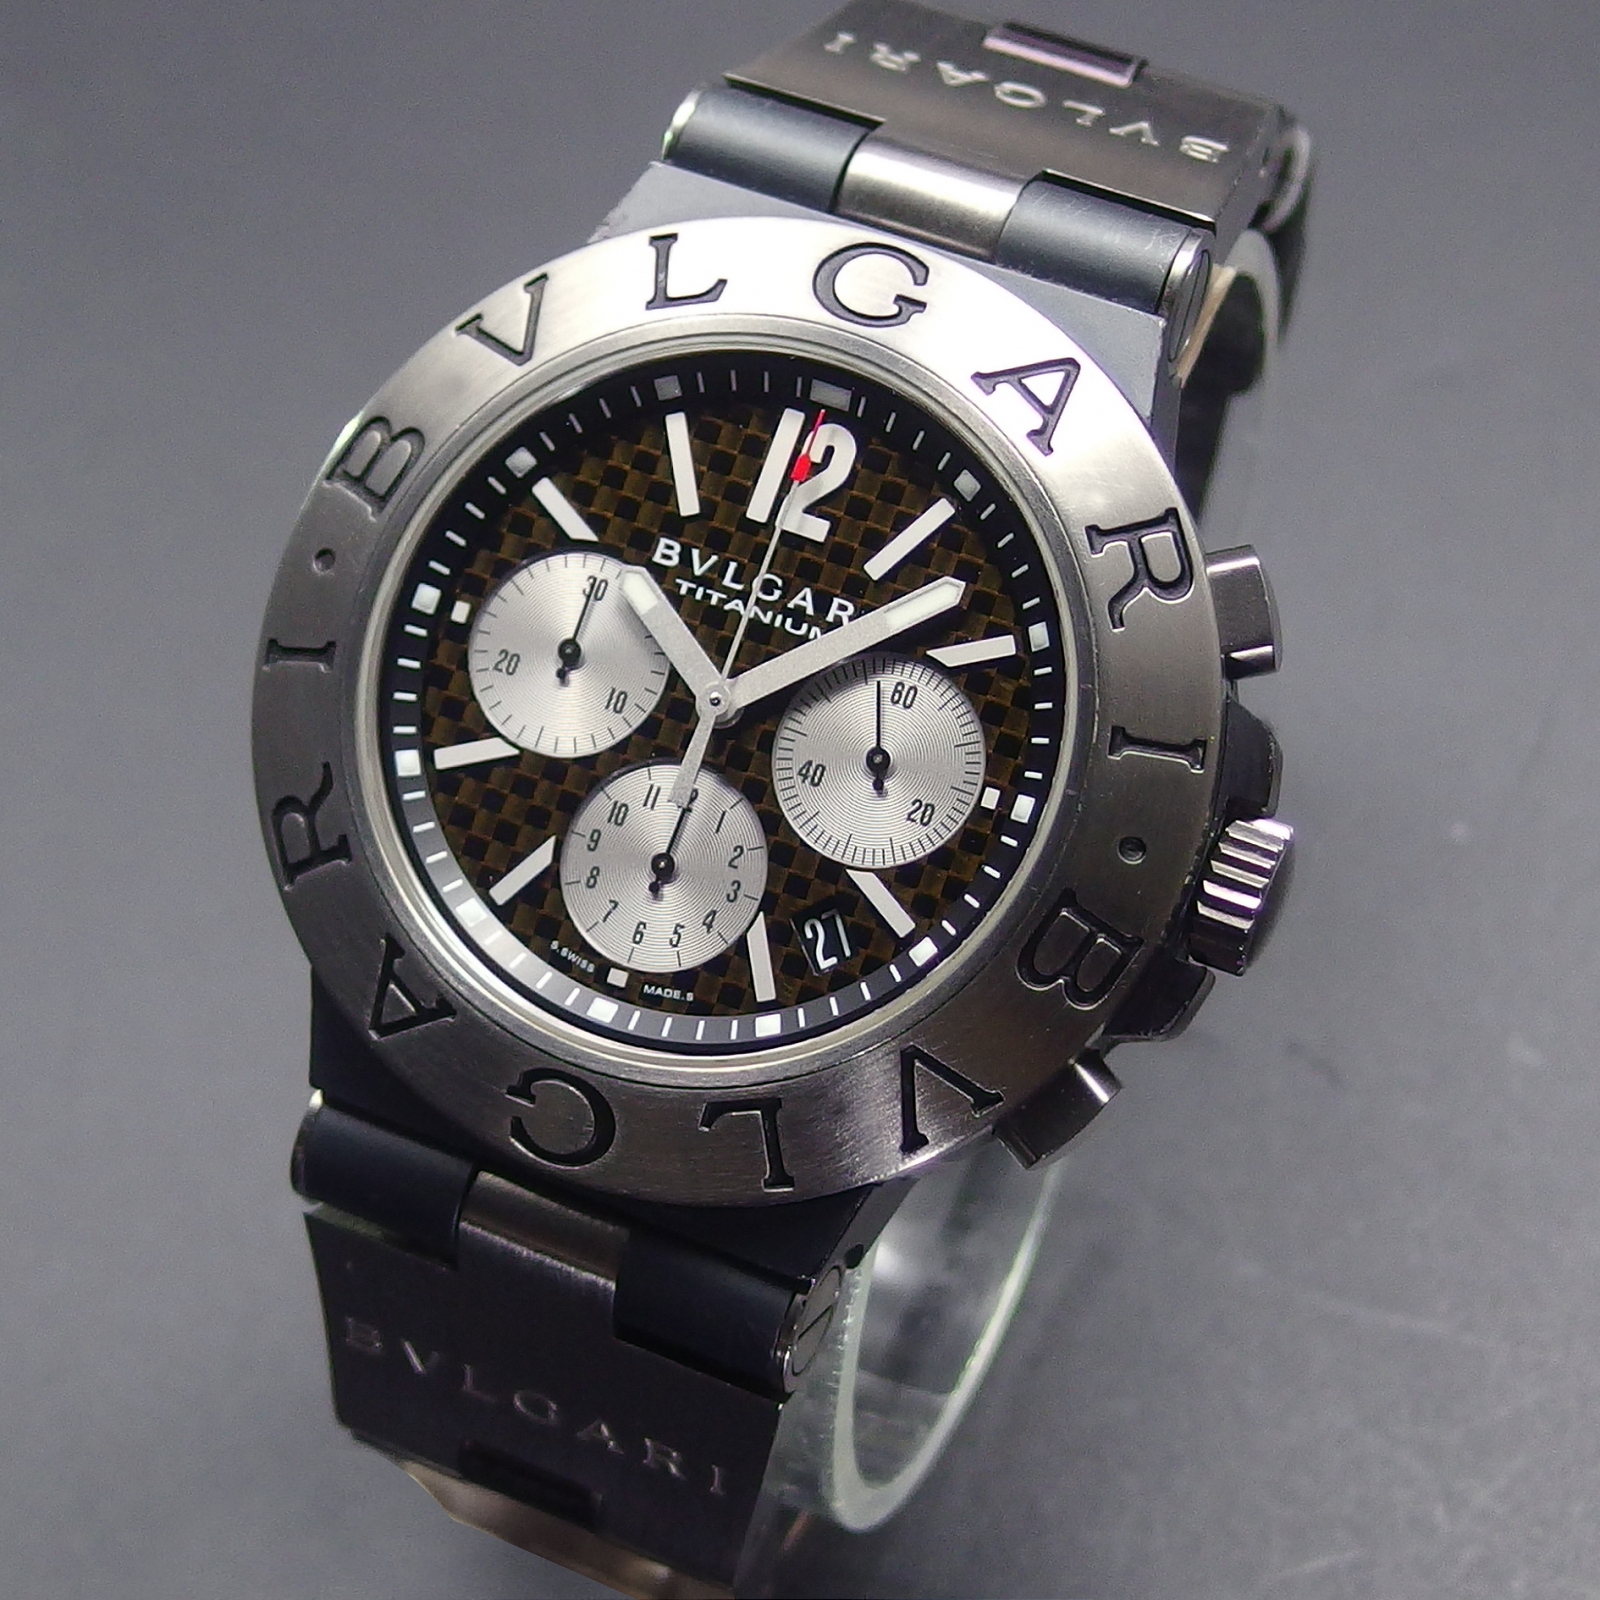 BVLGARI ブルガリ  ディアゴノ チタニウム 腕時計 TI44TACH チタン ラバー  シルバー 黒文字盤 ホワイト クロノグラフ デイト 自動巻き 【本物保証】